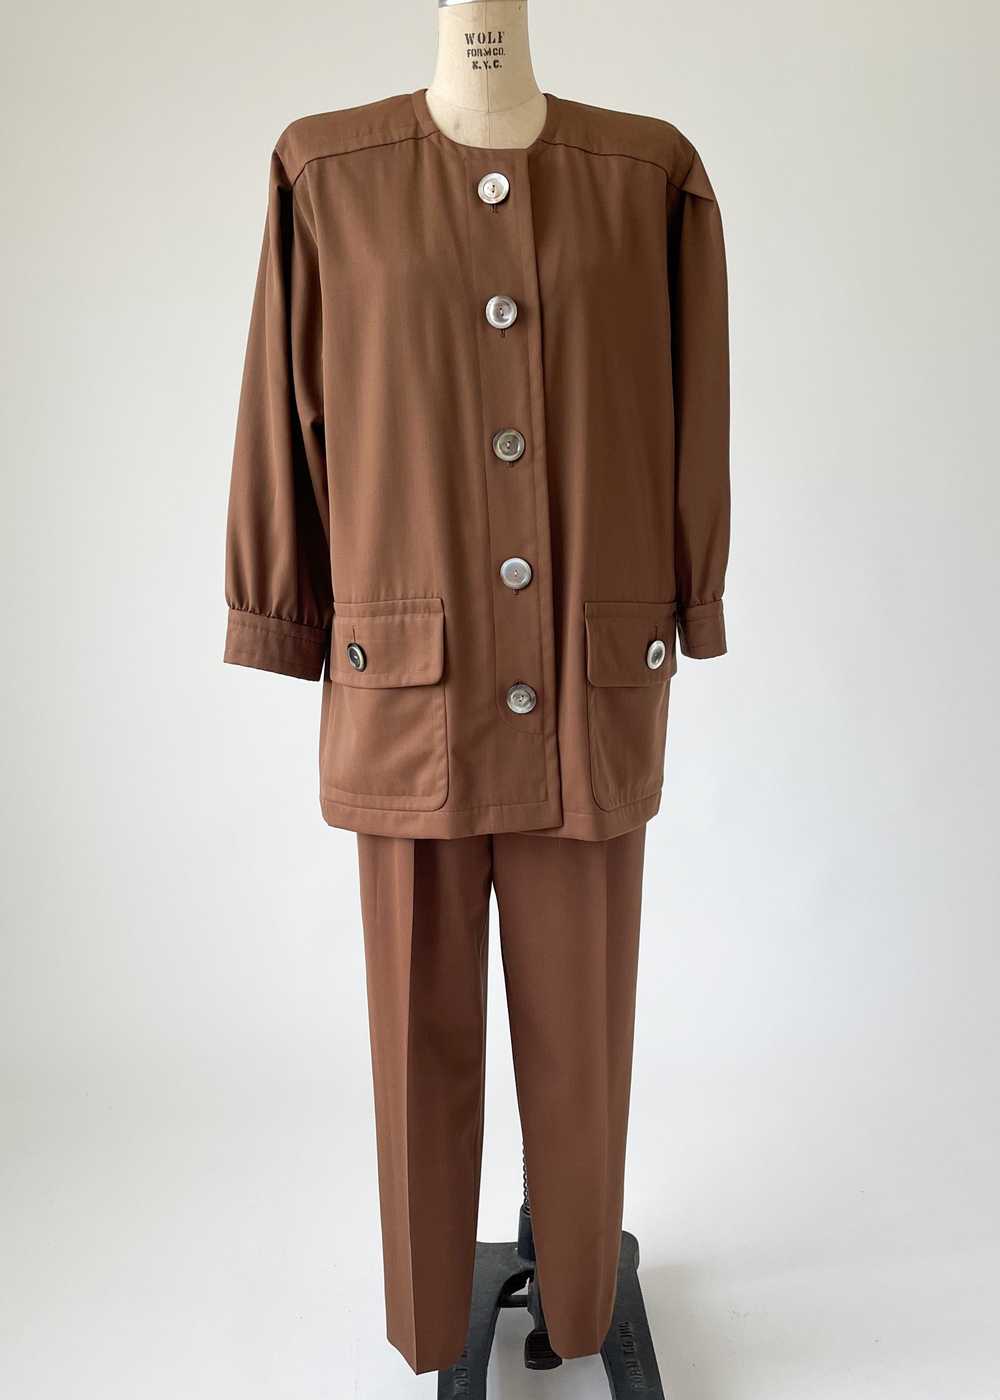 Vintage 1980s Yves Saint Laurent Pant Suit - image 4